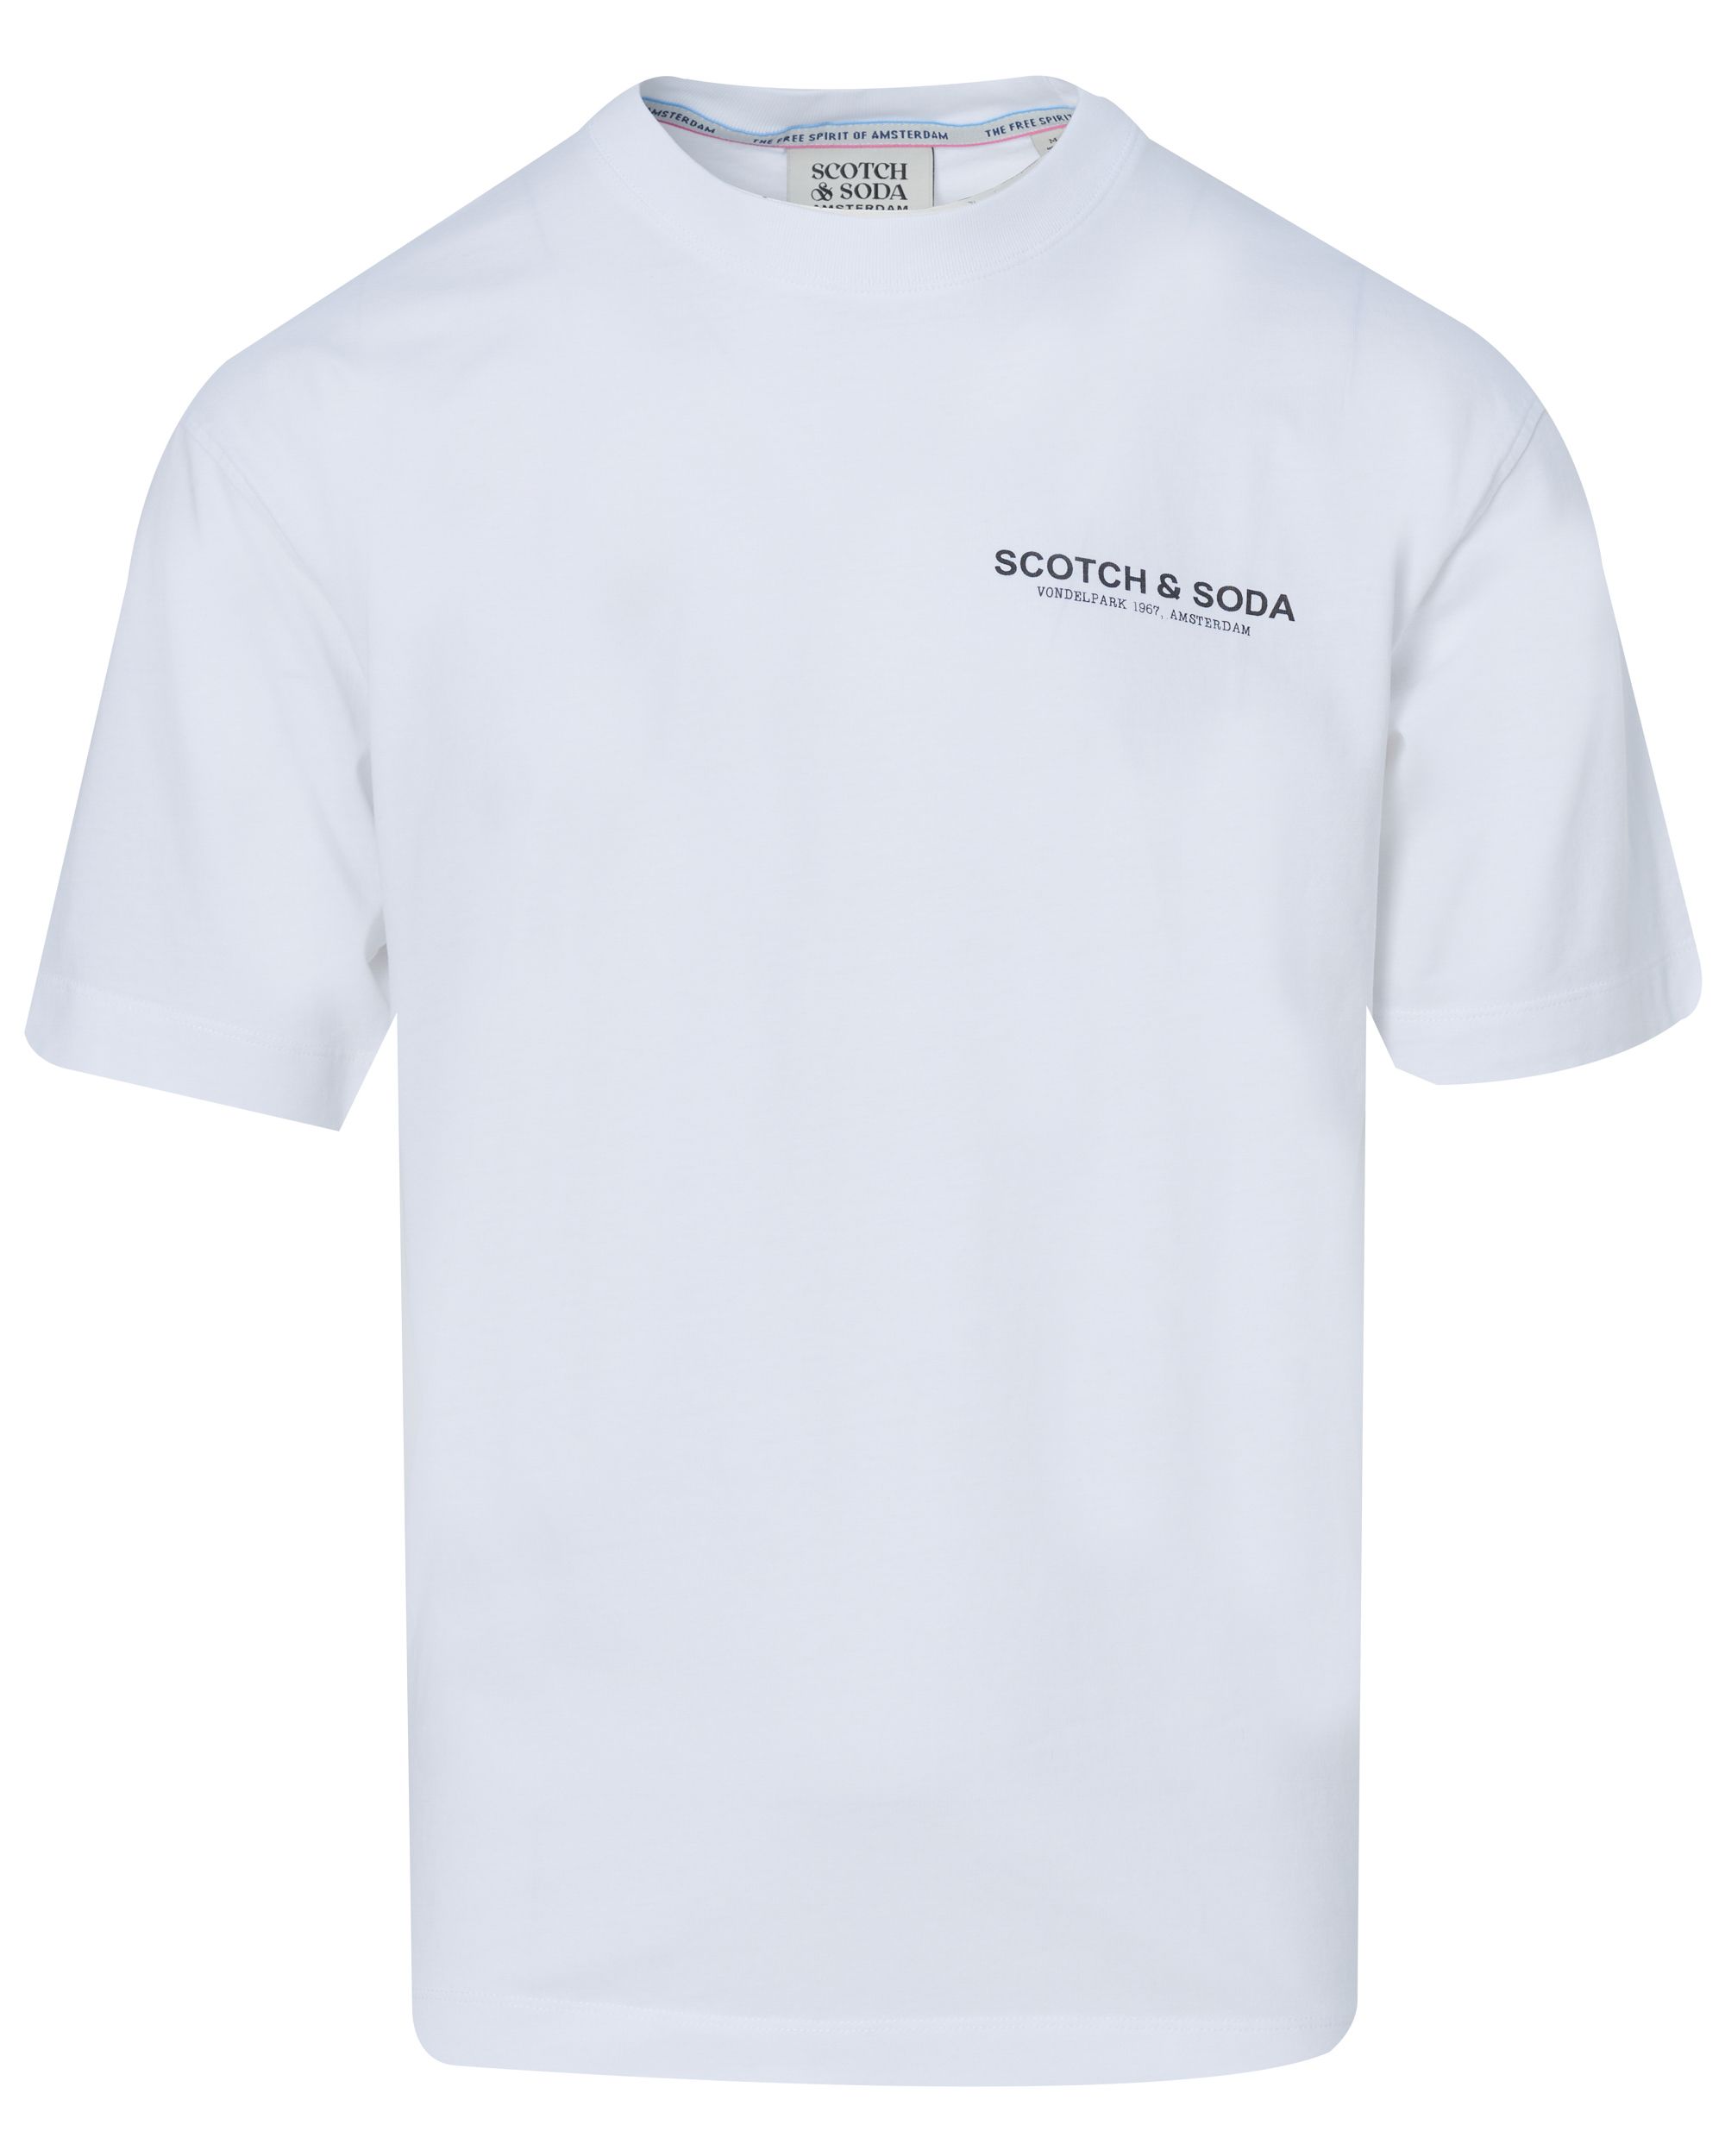 Scotch & Soda T-shirt KM Wit 086151-001-L